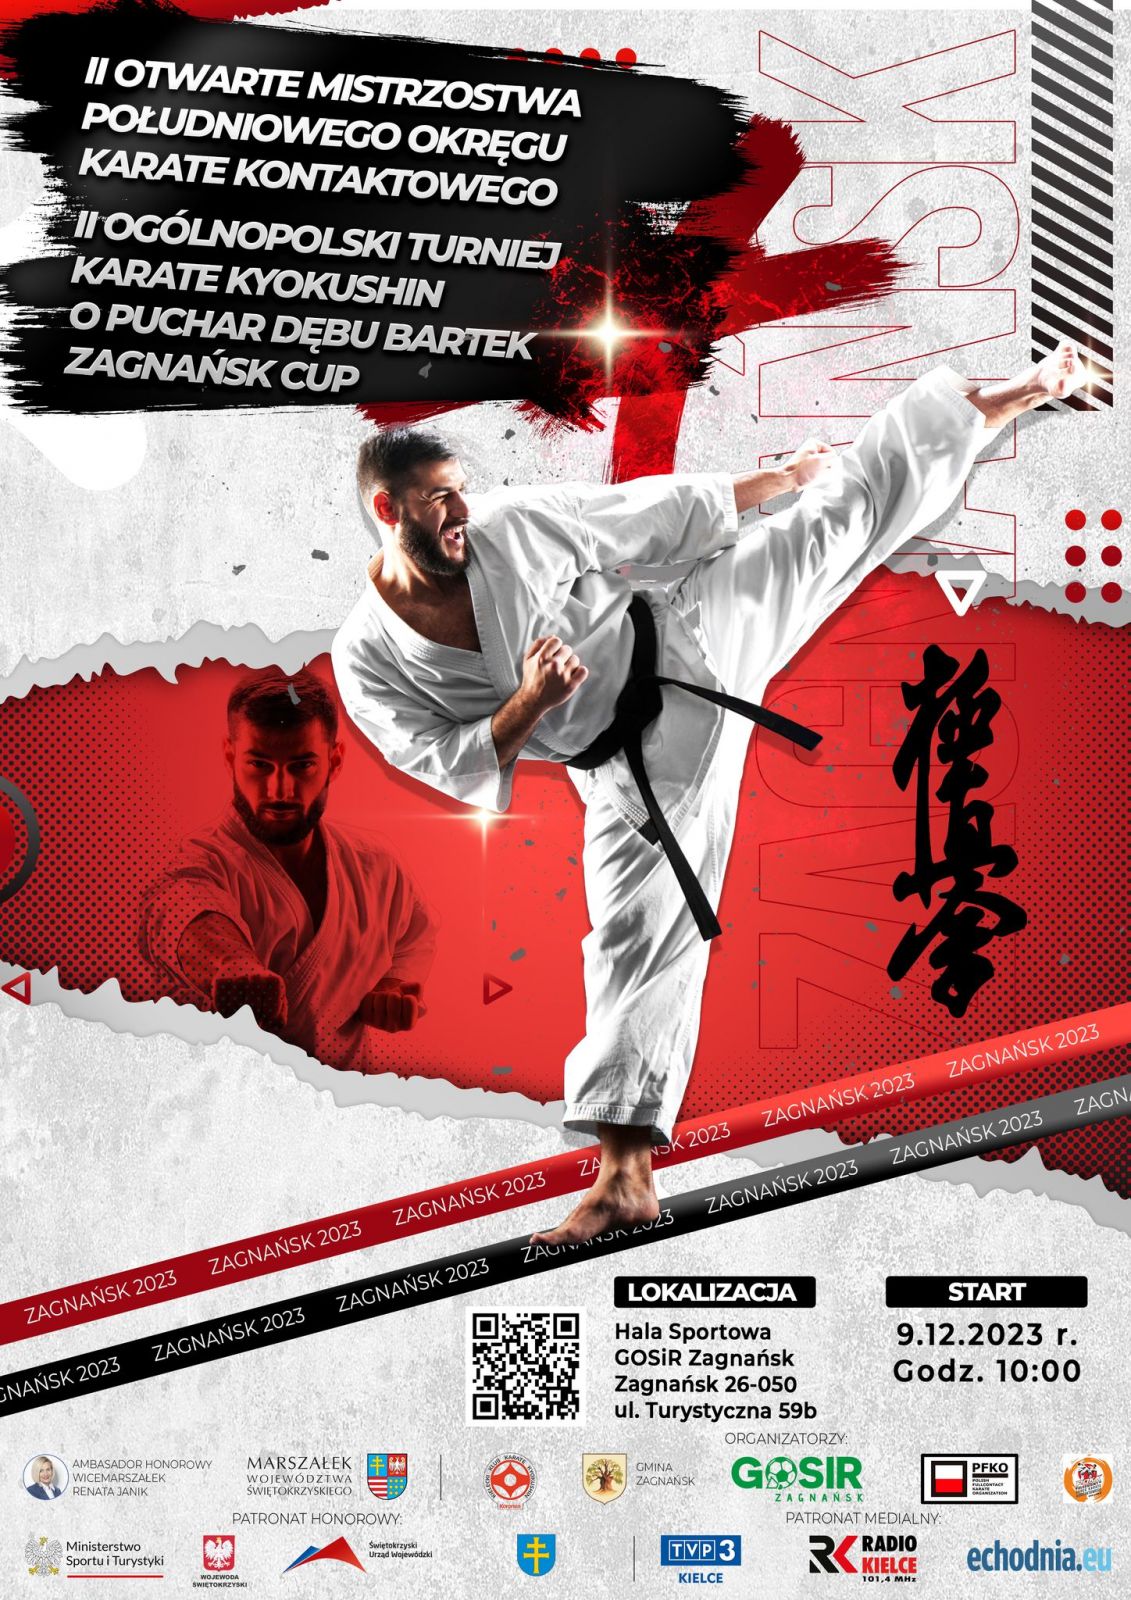 II Otwarte Mistrzostwa Południowego Okręgu Karate Kontaktowego oraz II Ogólnopolski Turniej Ka-rate Kyokushin o Puchar Dębu Bartek Zagnańsk Cup.